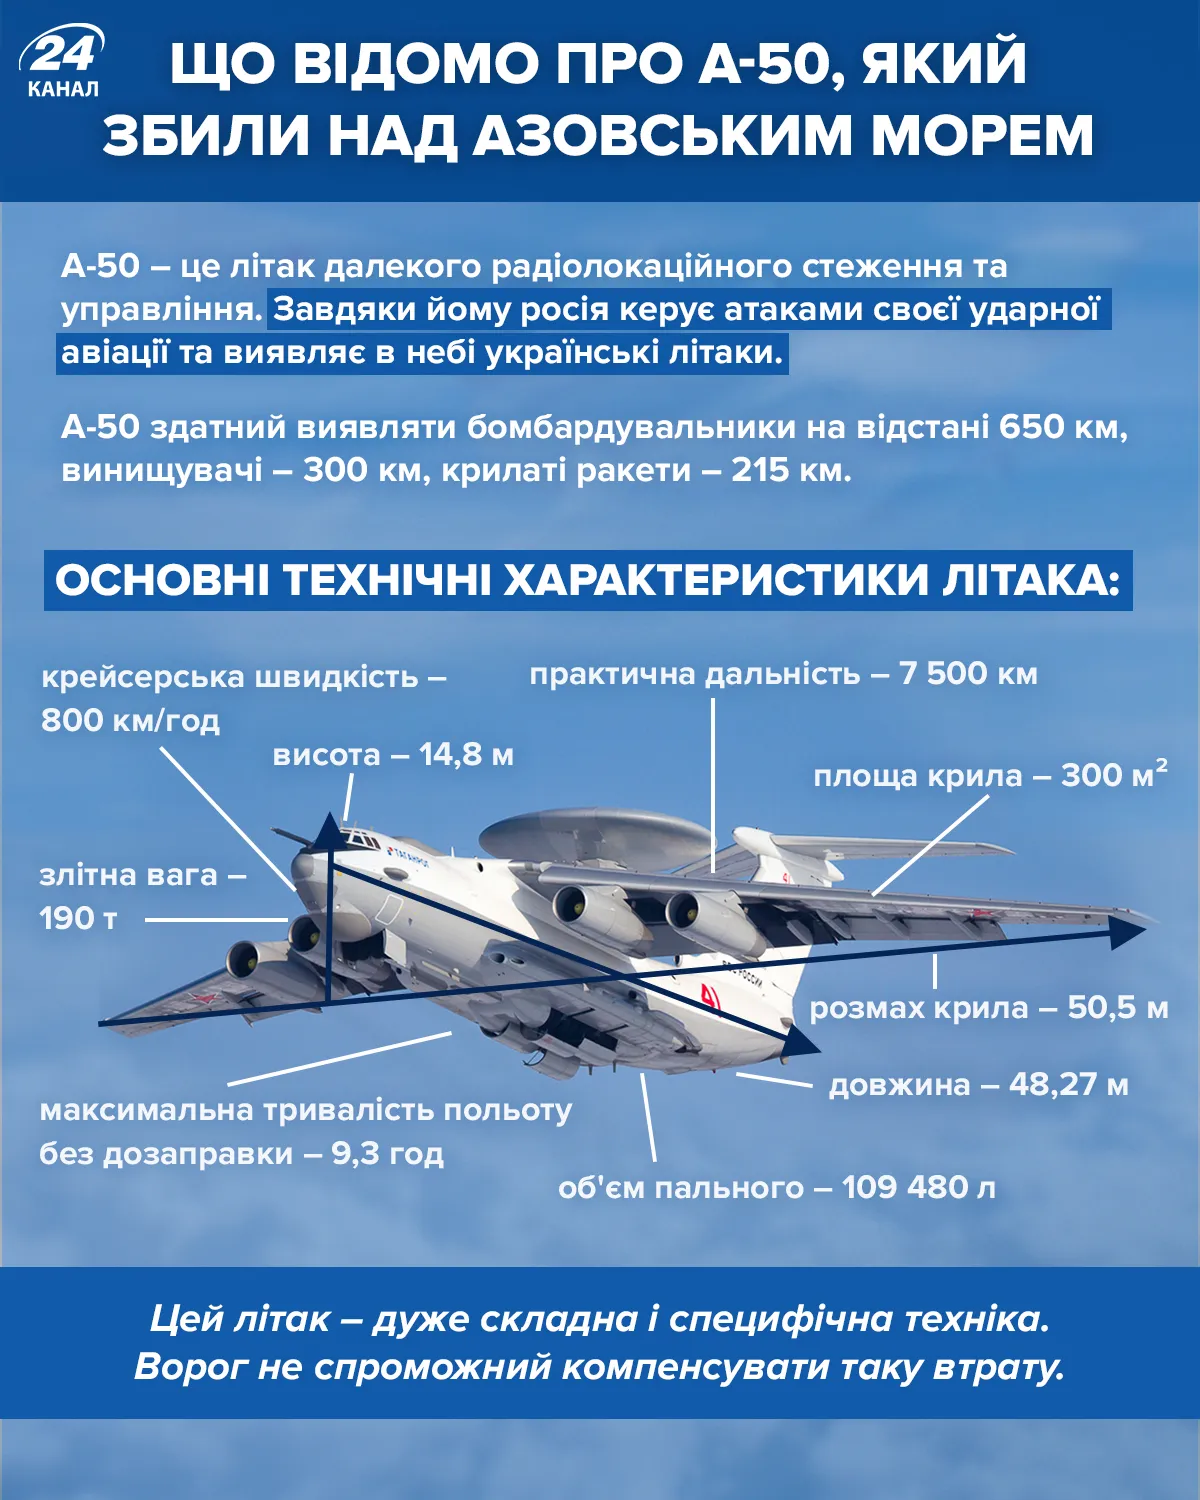 Характеристики сбитого российского А-50